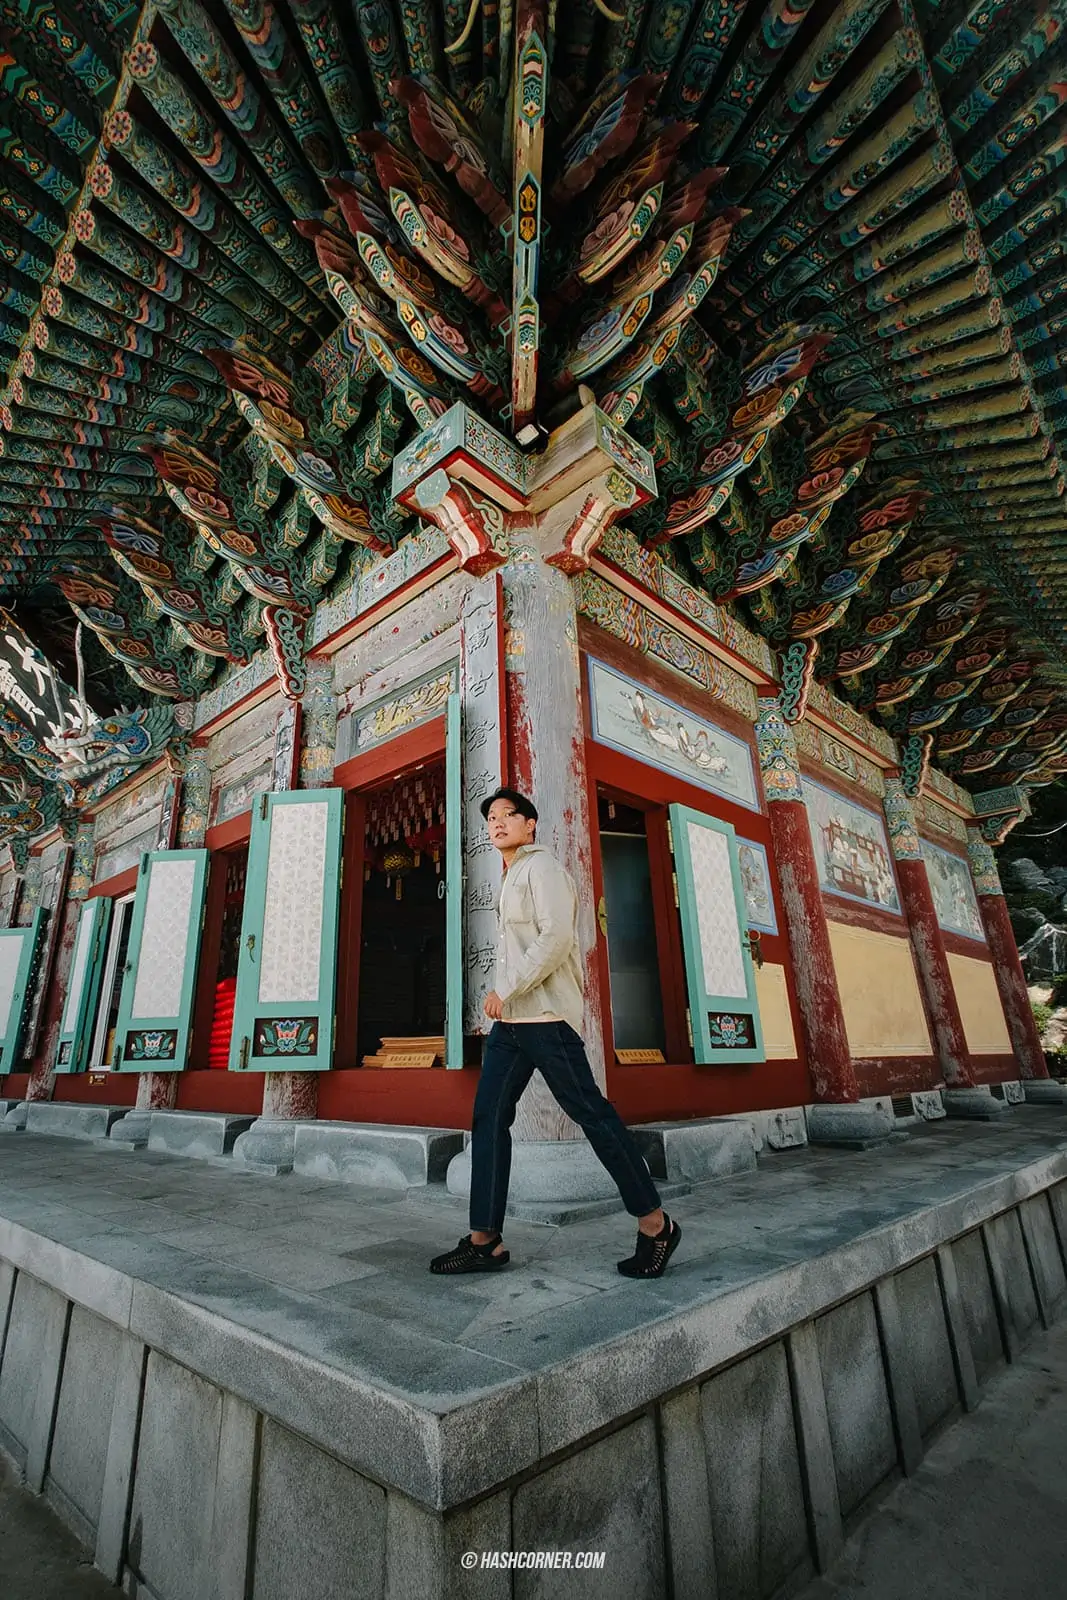 รีวิว วัดแฮดอง ยงกุงซา (Haedong Yonggungsa Temple) x ปูซาน เที่ยววัดเก่าแก่ริมทะเล